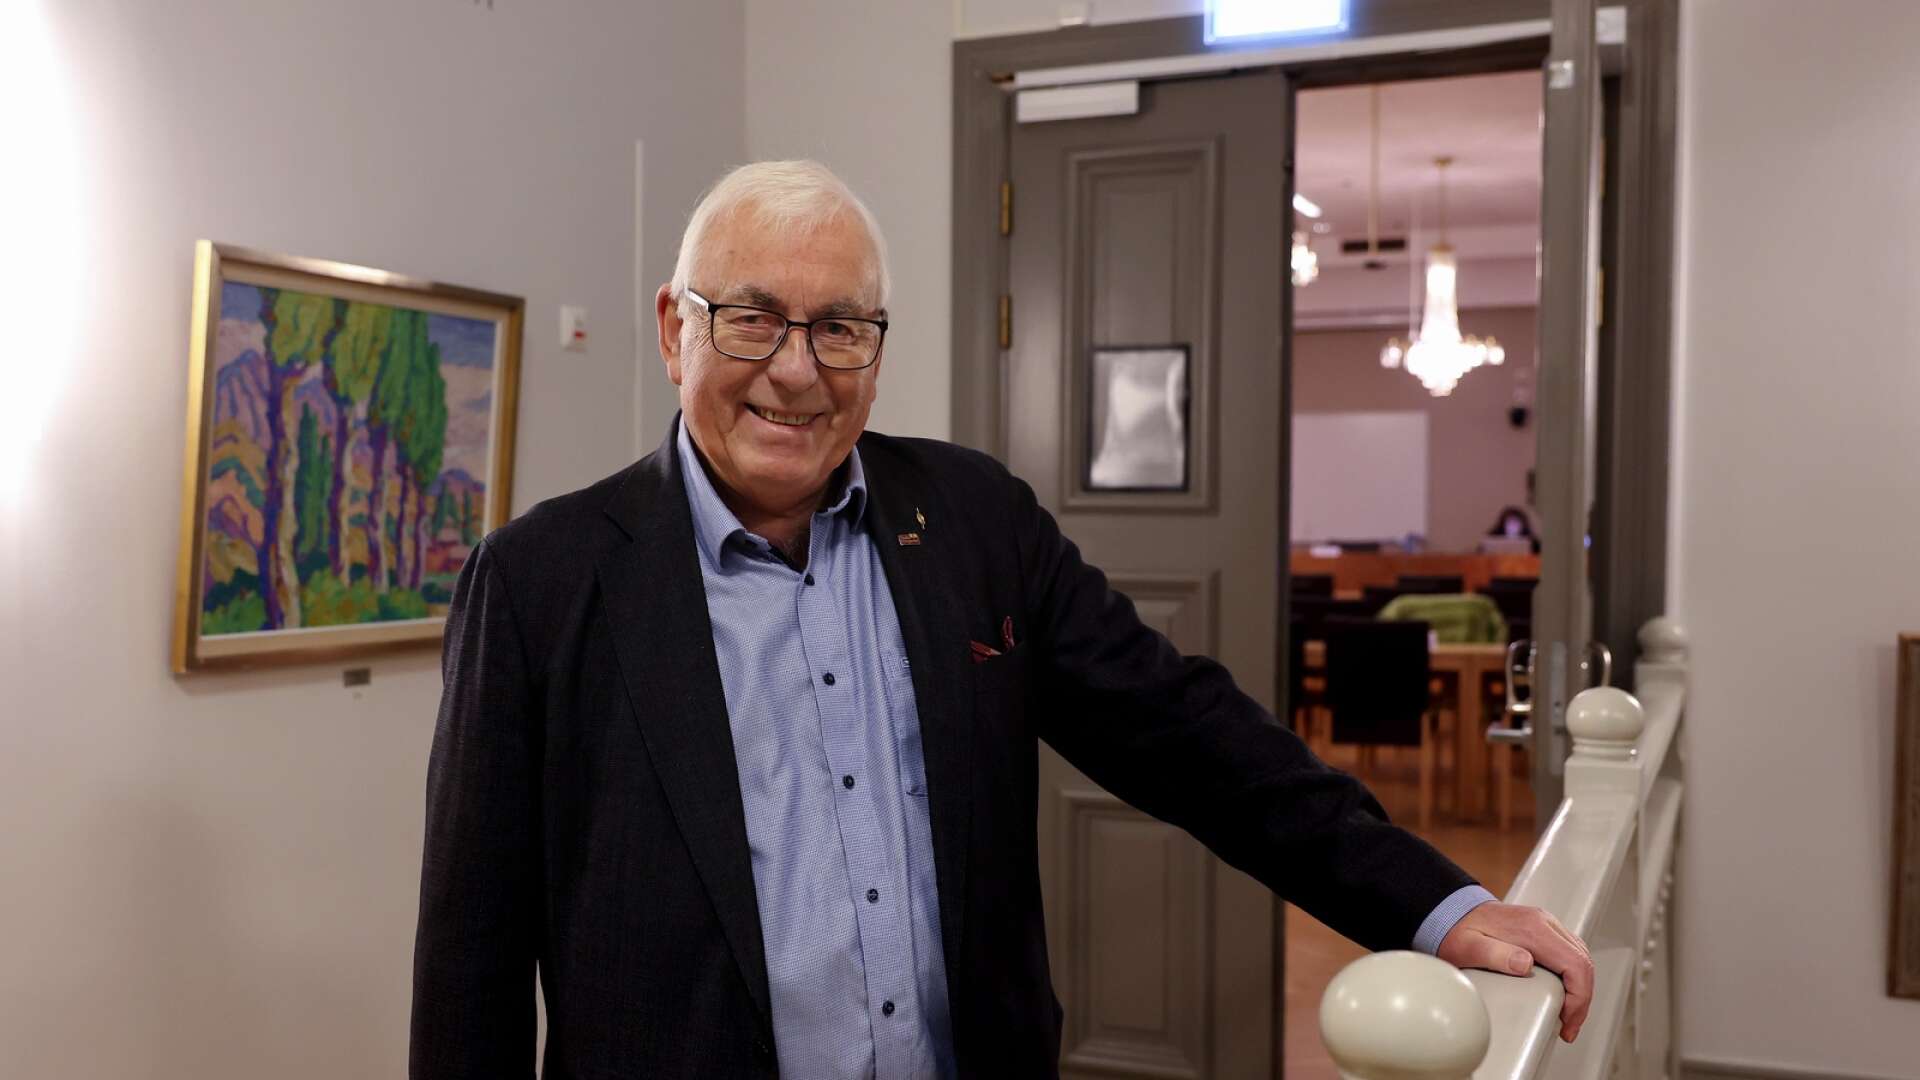 Veteranen Bertil Jonsson gör comeback i politiken. Han valdes till ordförande i kommunstyrelsen i Lidköping under måndagskvällen.